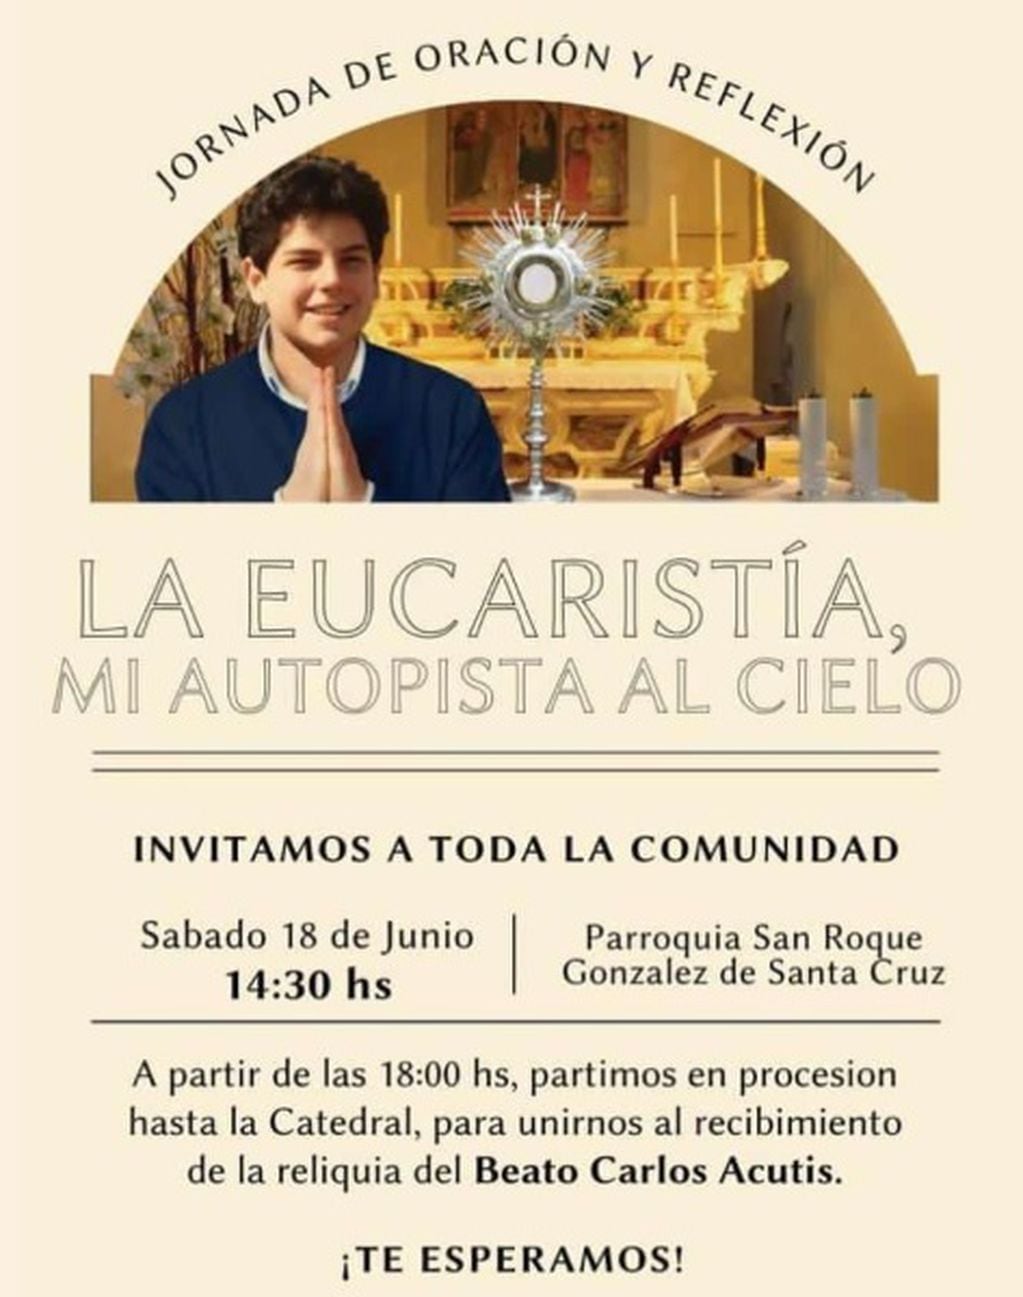 La reliquia del Beato Carlo Acutis será expuesta en Puerto Iguazú.